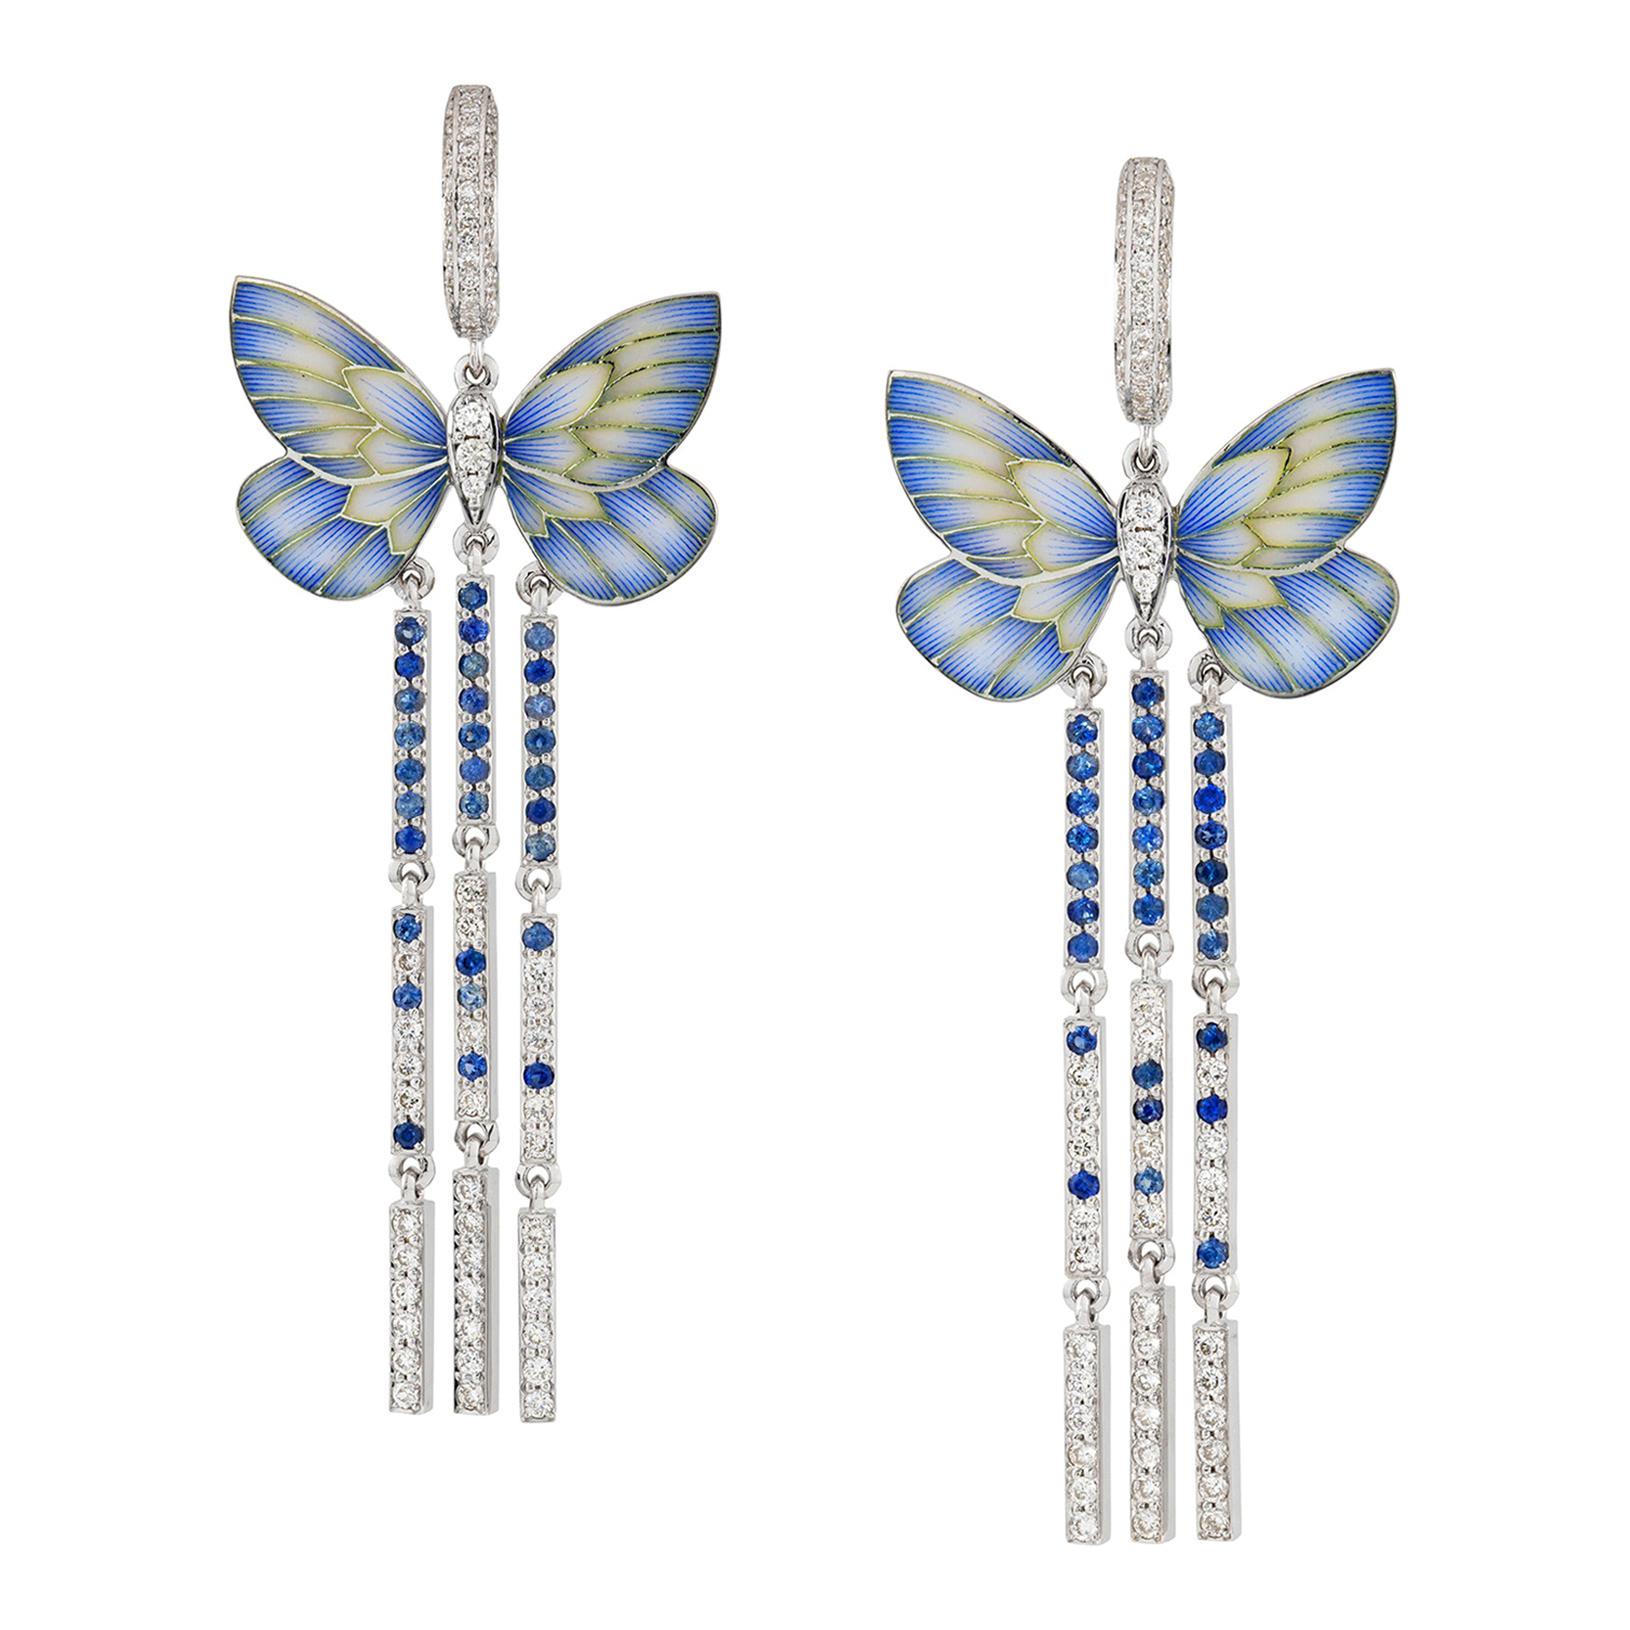 A Pair of Blue Butterfly Earrings by Ilgiz F